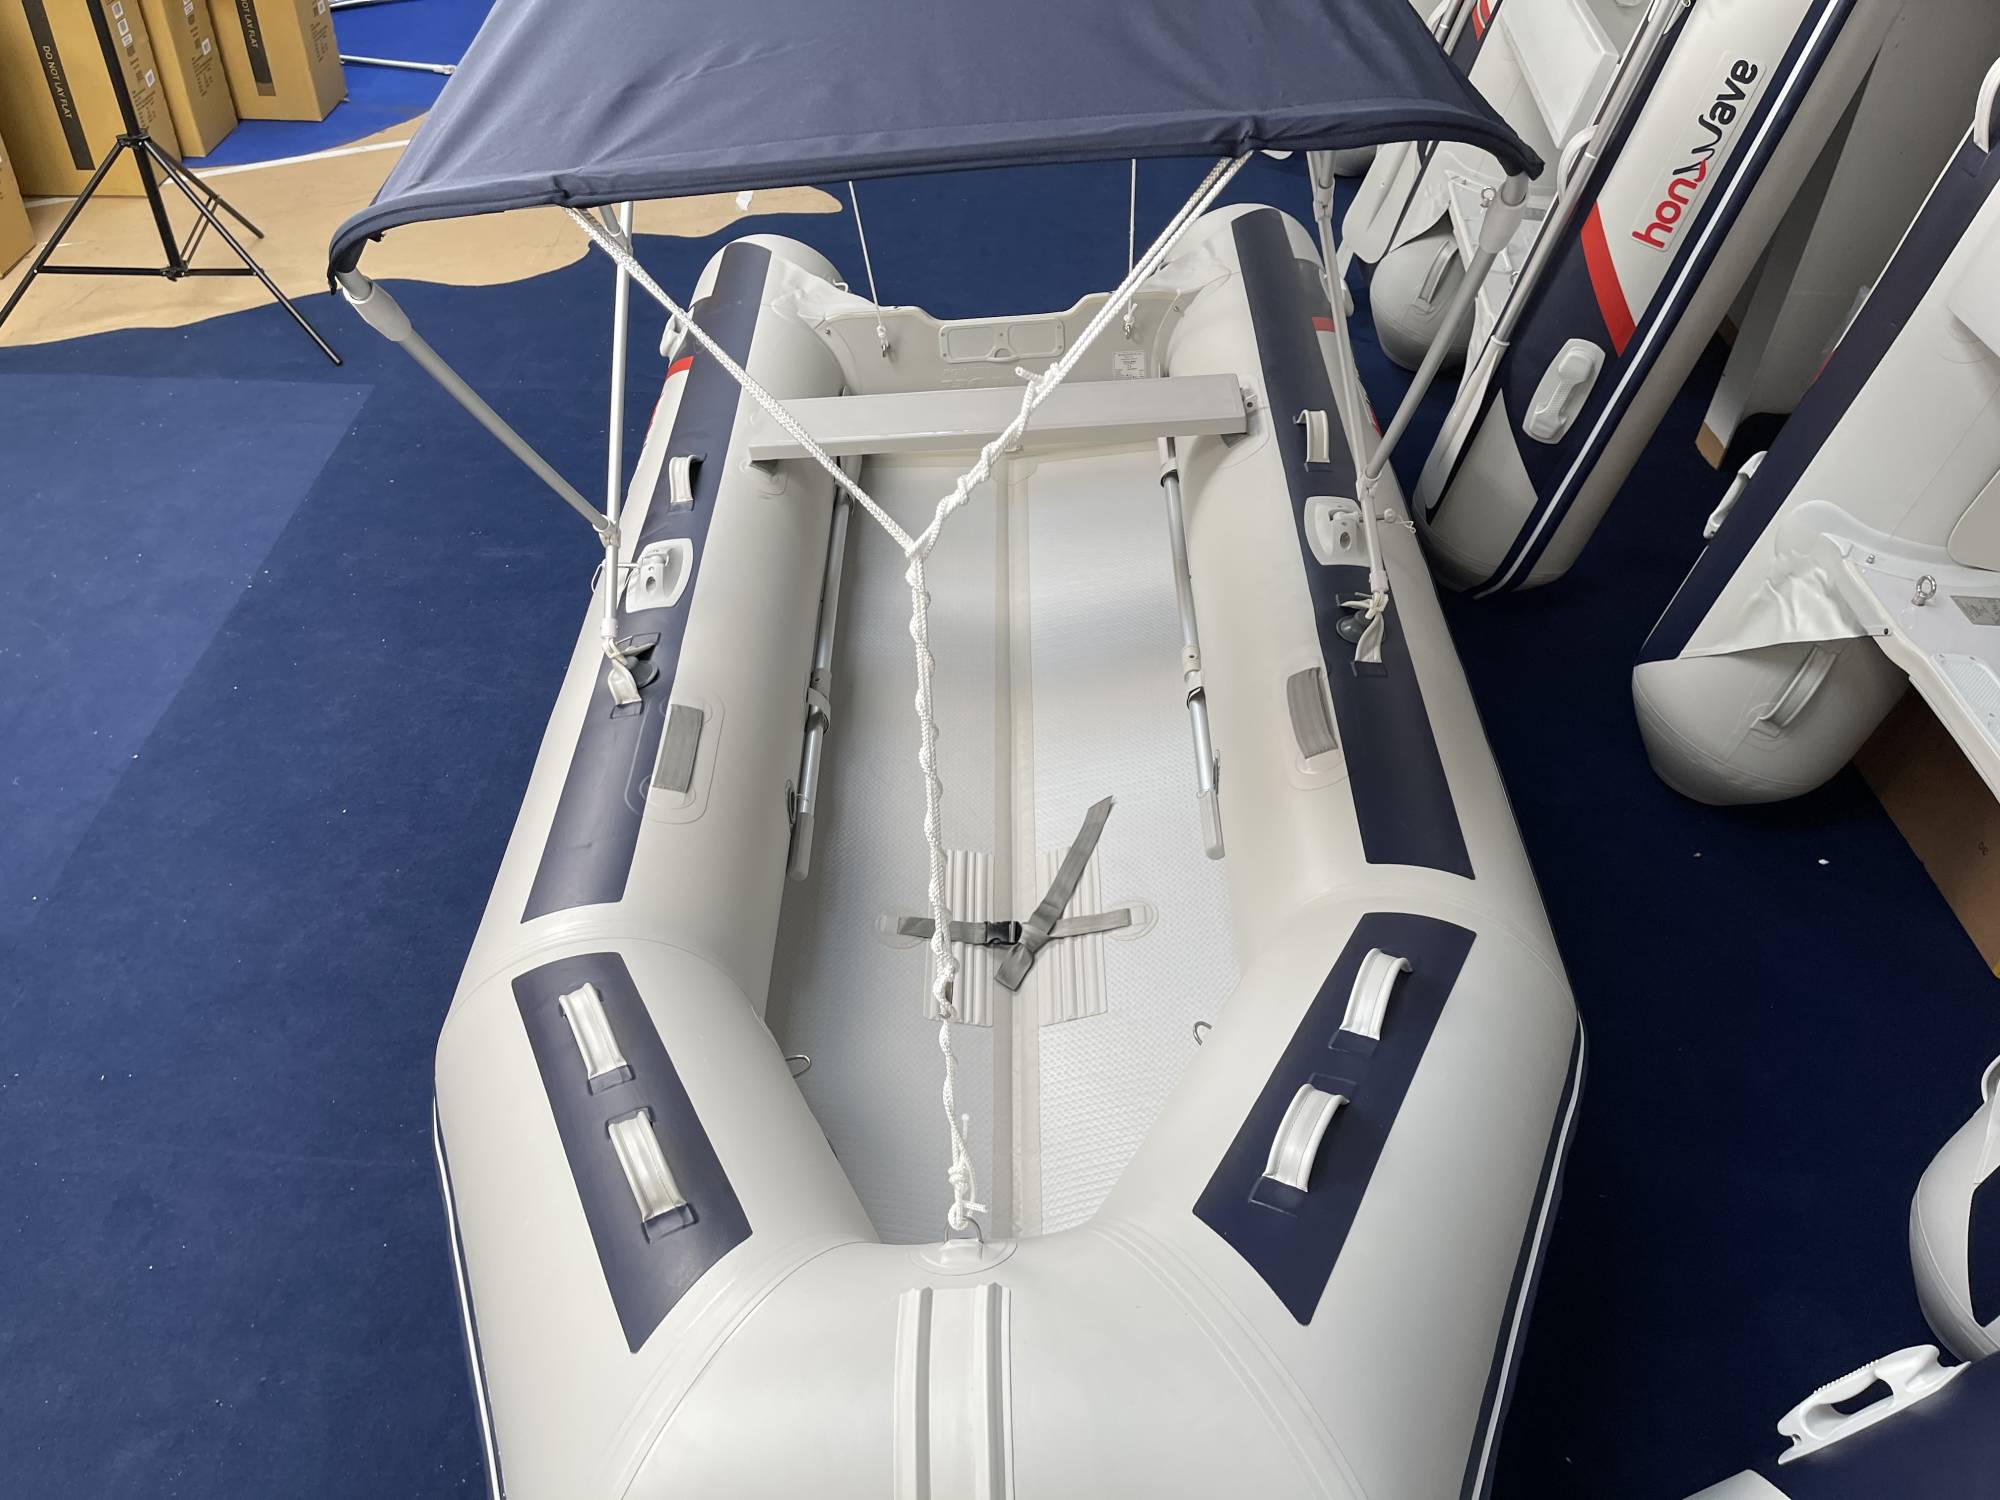 Ma-Sa Schlauchboot Sonnendach 130 cm breite mit drei Streben dunkelblau